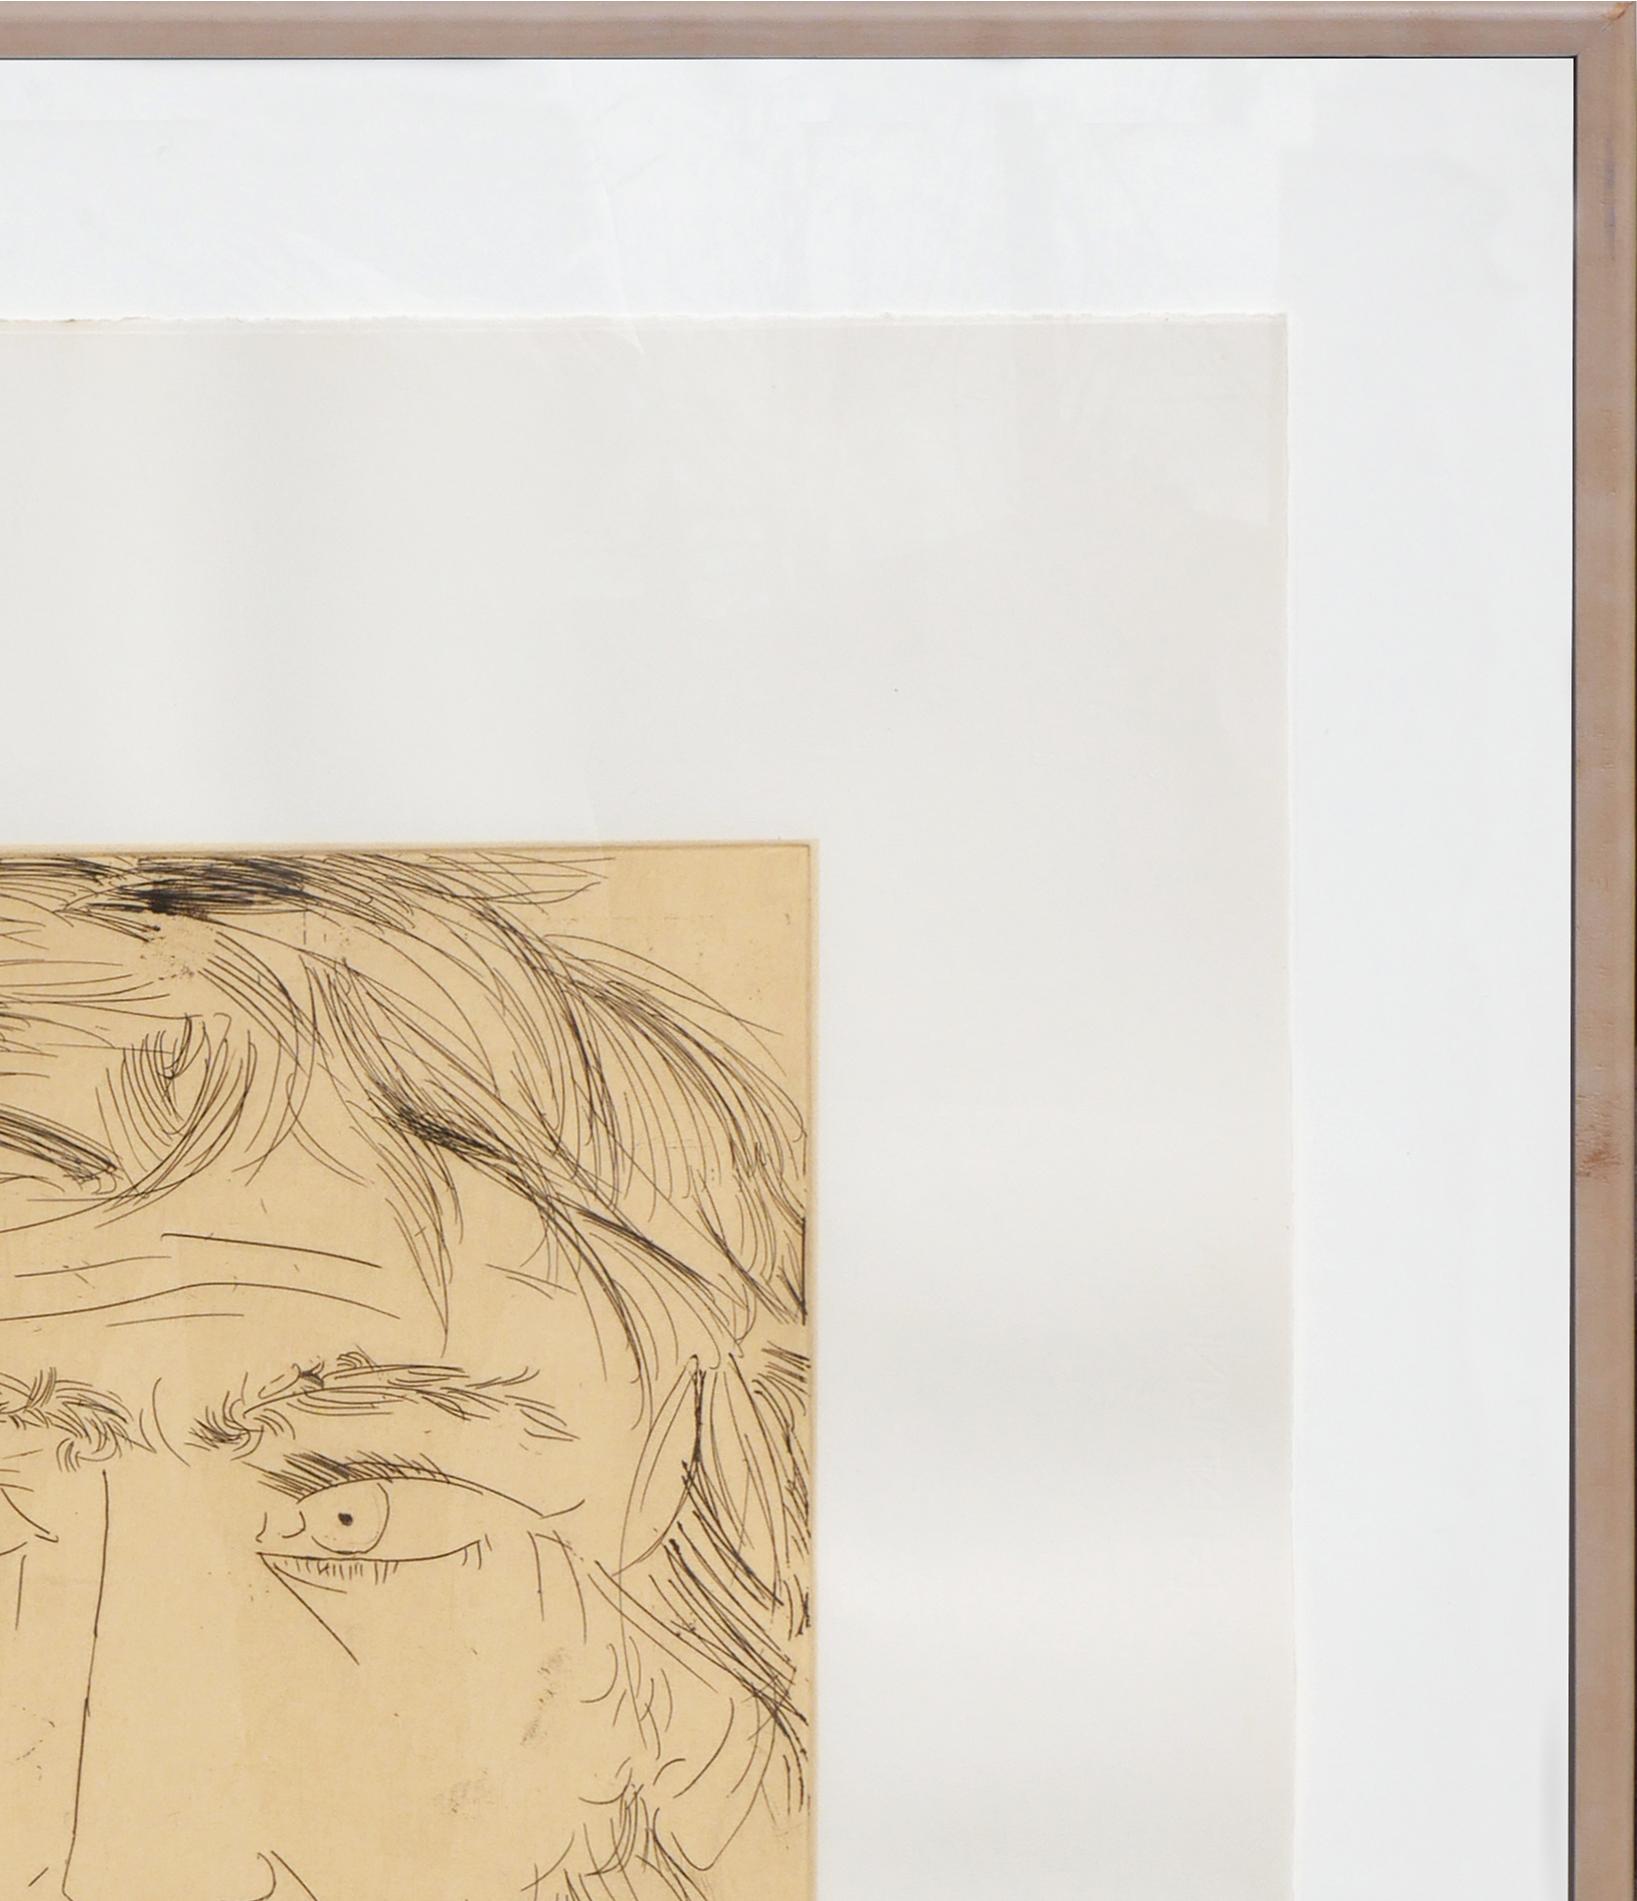 Monochromatische abstrakte figurative Radierung des italienischen Künstlers Giacomo Manzú. Das Werk zeigt ein Bildnis von Jesus Christus mit einem deutlichen Gesichtsausdruck auf Velinpapier. Unten vom Künstler signiert und mit der Auflage 98/200